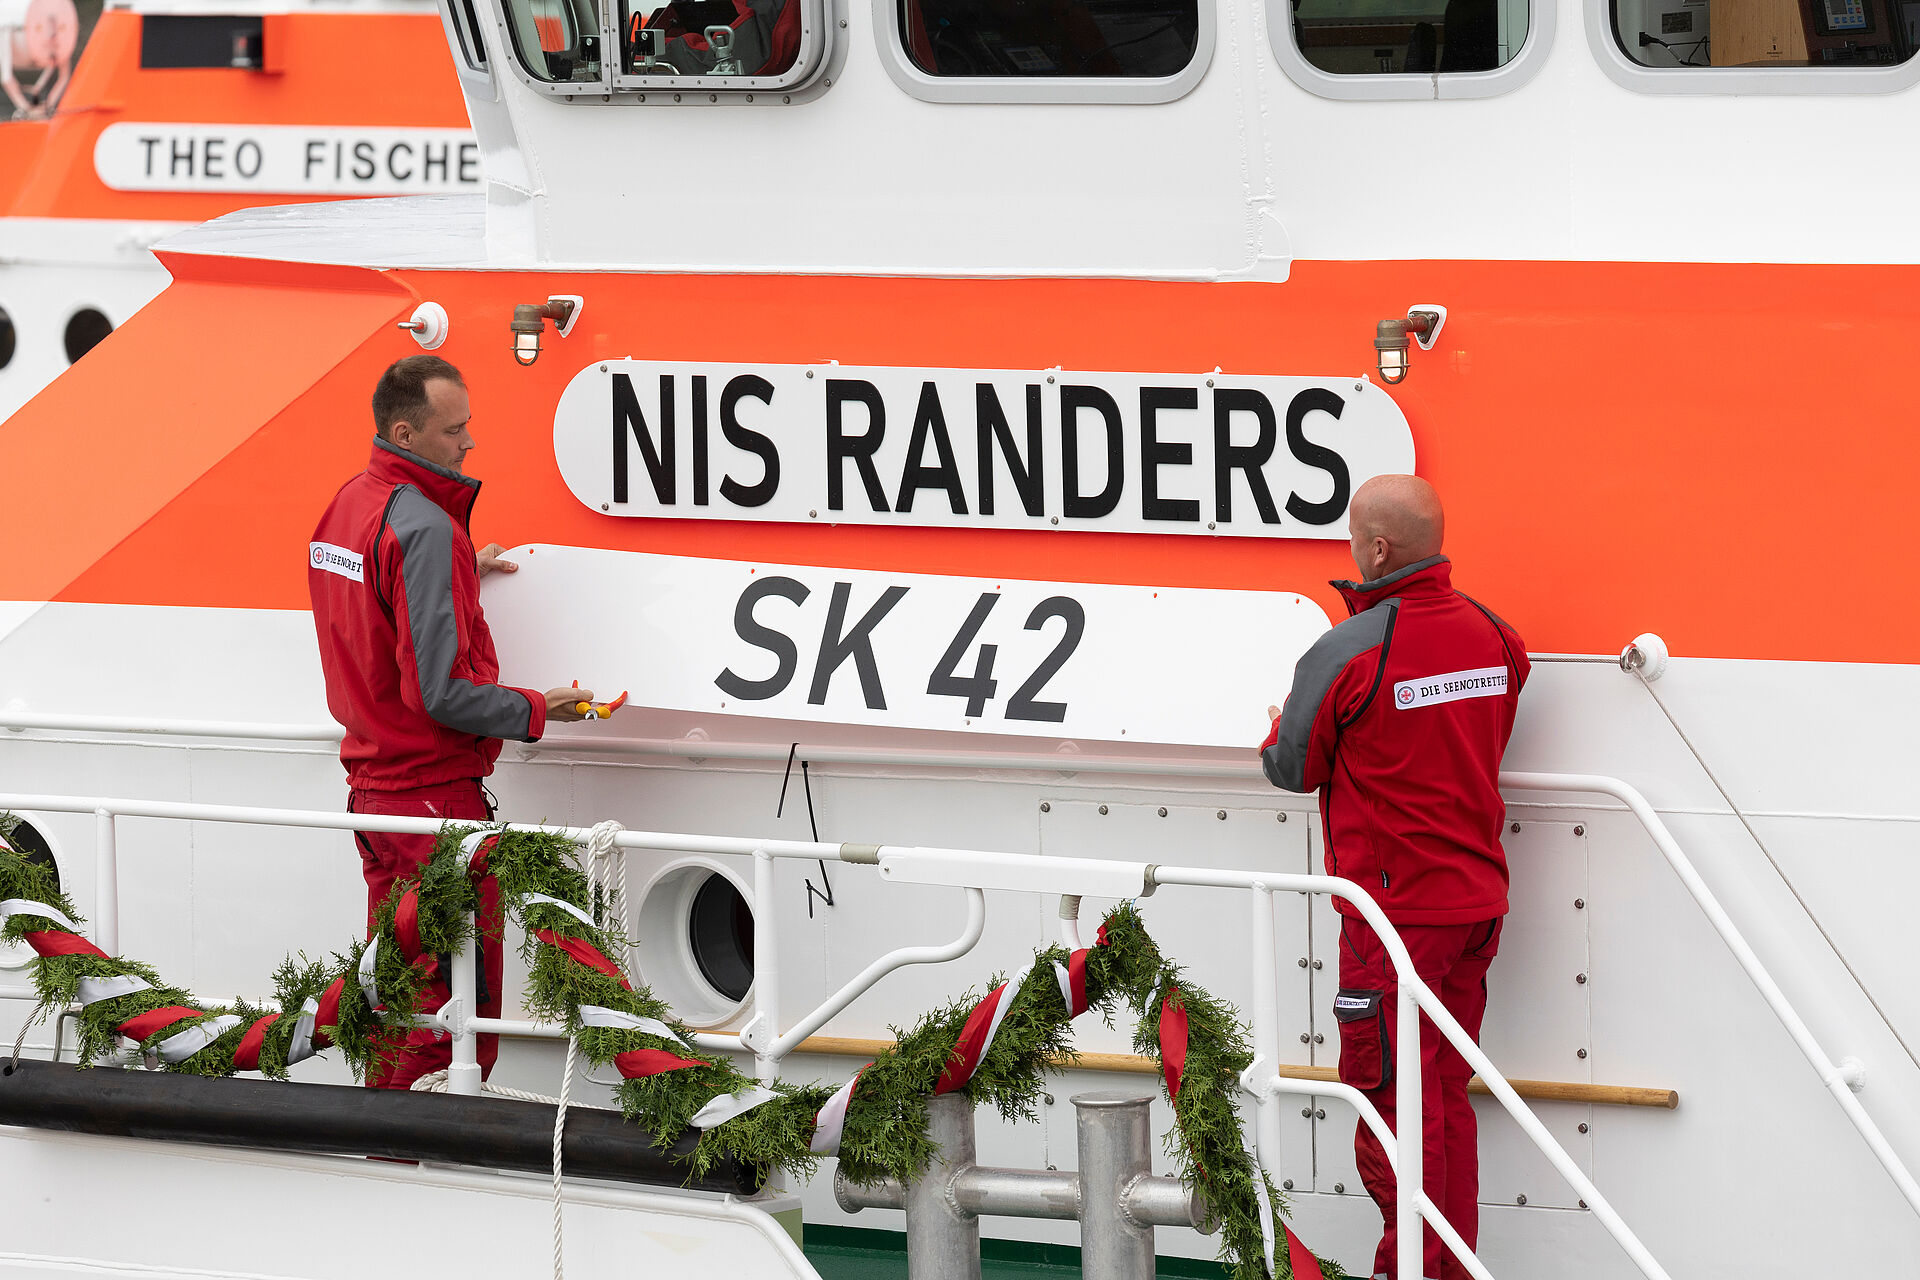 Zwei Seenotretter stehen am Seitengang des Seenotrettungskreuzers und heben das Schild mit der Beschriftung SK 42 runter. Dahinter hängt das Schild mit der Beschriftung NIS RANDERS.